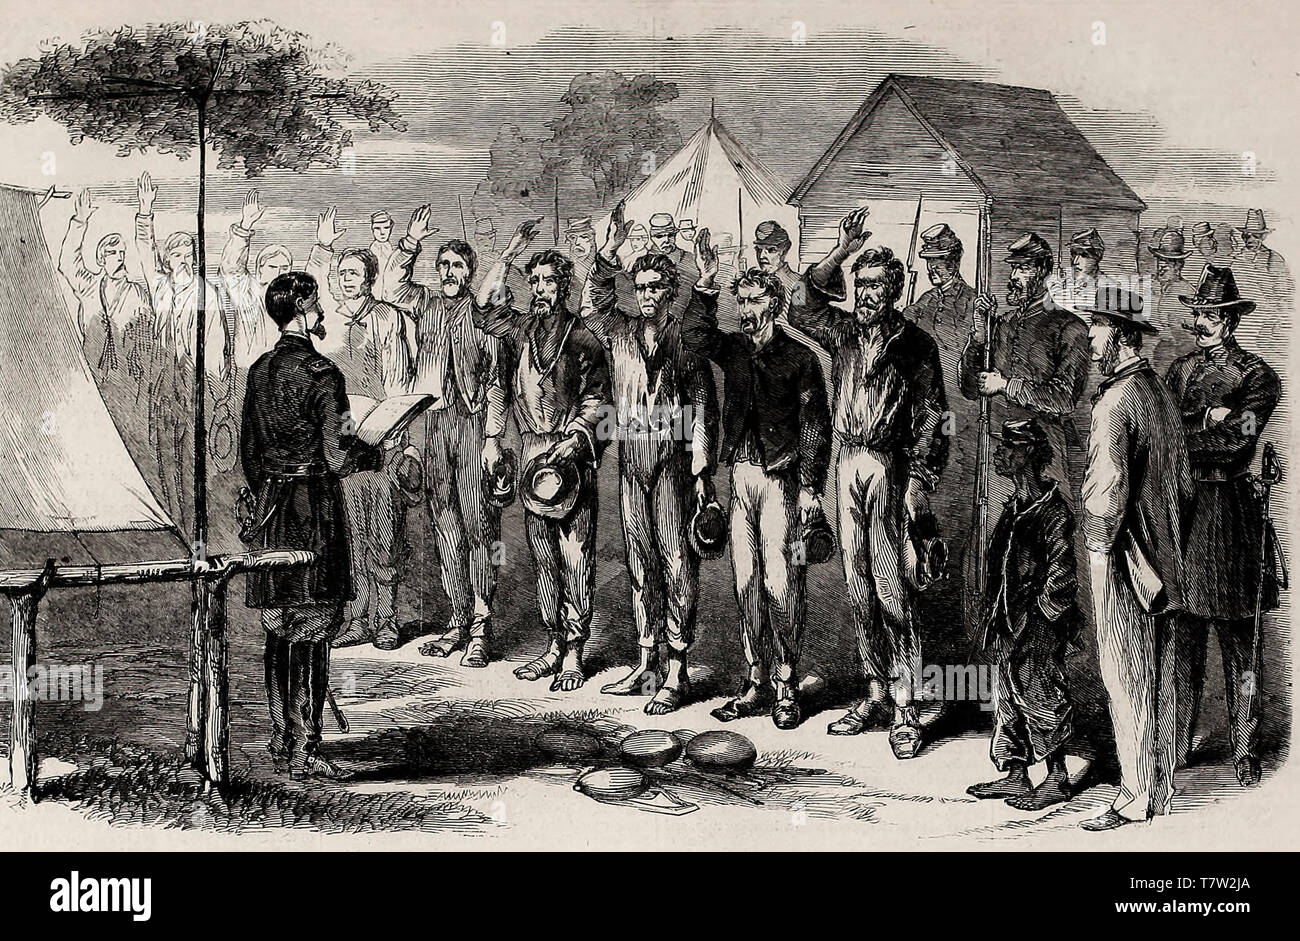 La campagne de subvention - l'administration du serment d'allégeance à des prisonniers rebelles près de Dutch Gap. La guerre civile américaine, 1864 Banque D'Images